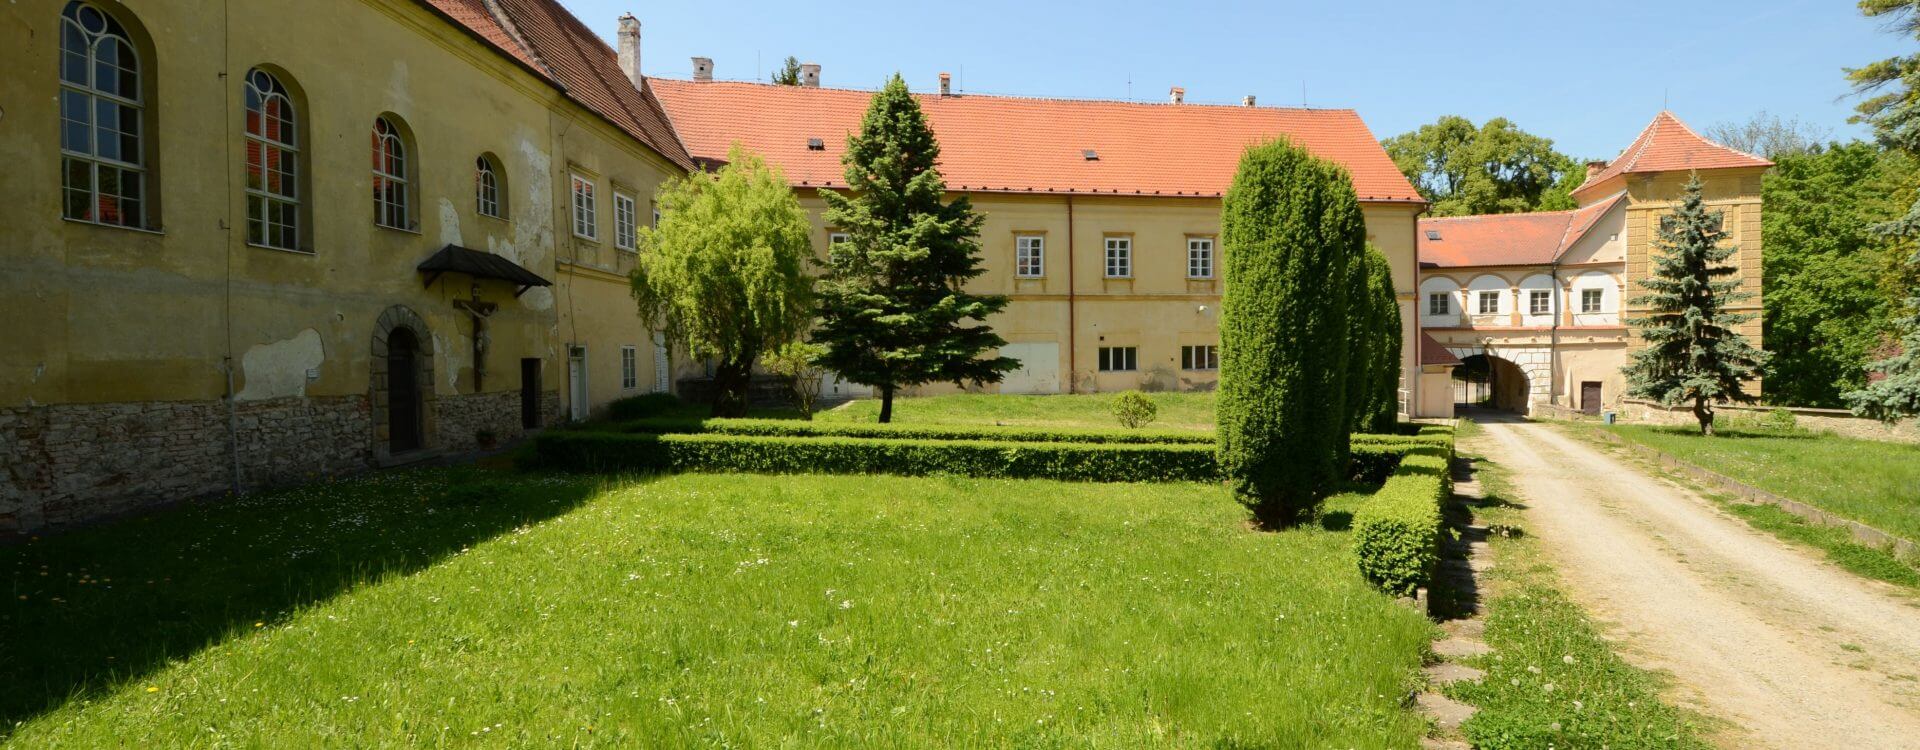 Ubytování na zámku Račice